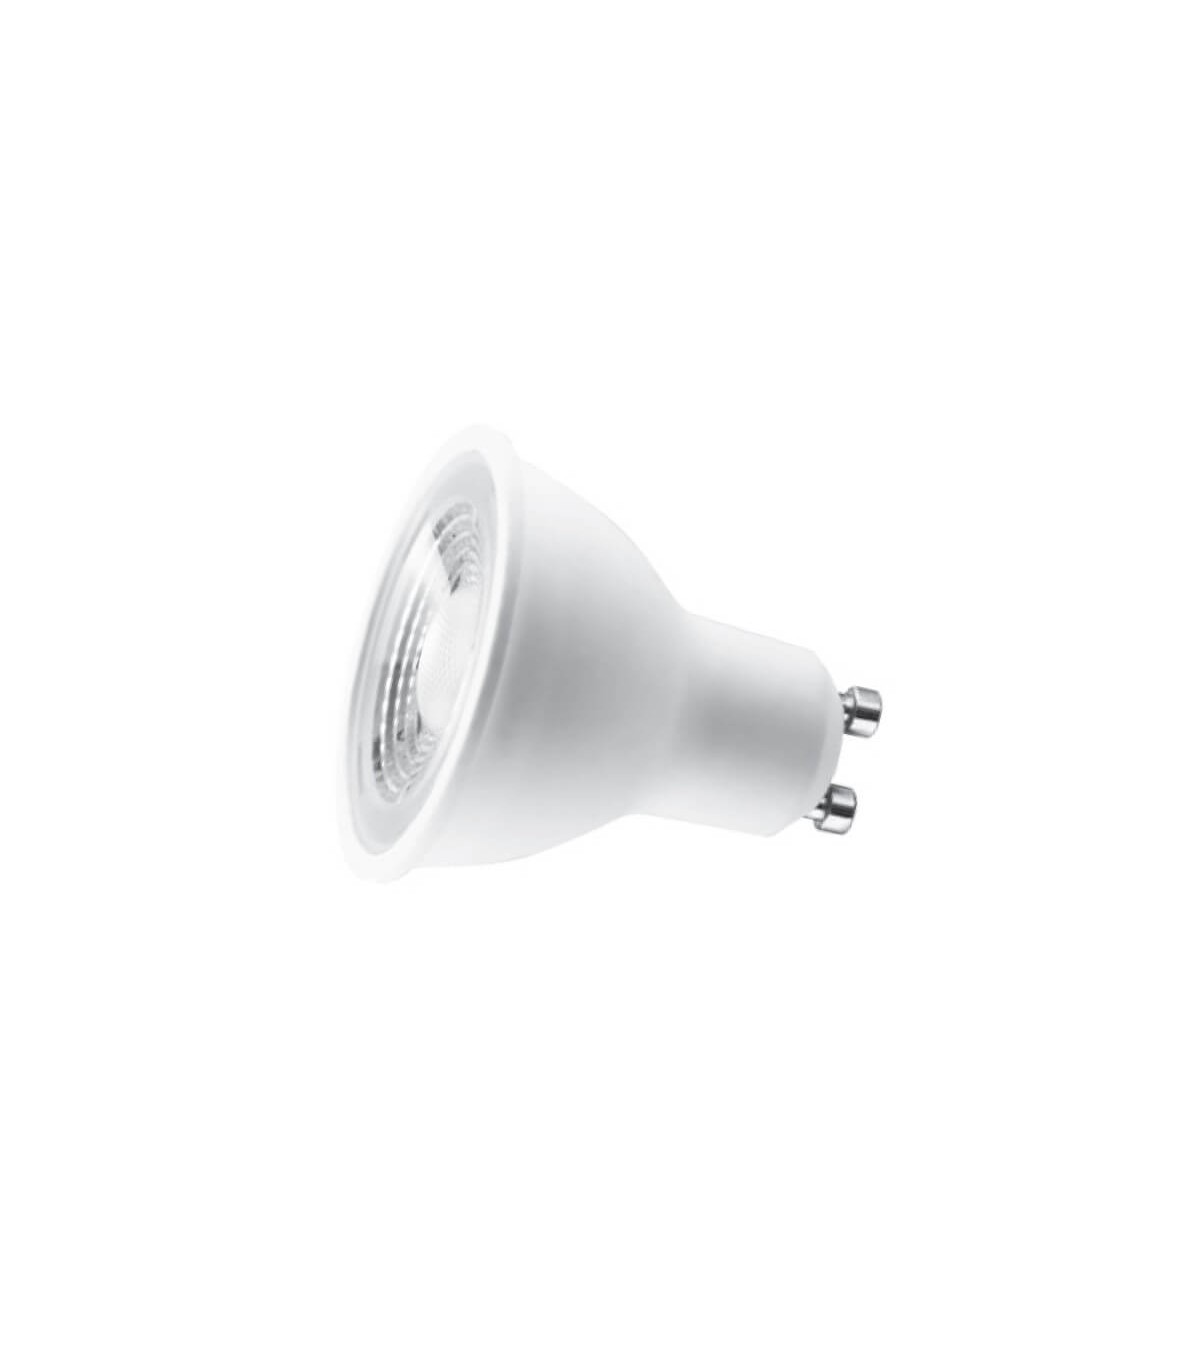 Ampoule LED GU10 blanc chaud 240 lm 3,6 W SYLVANIA